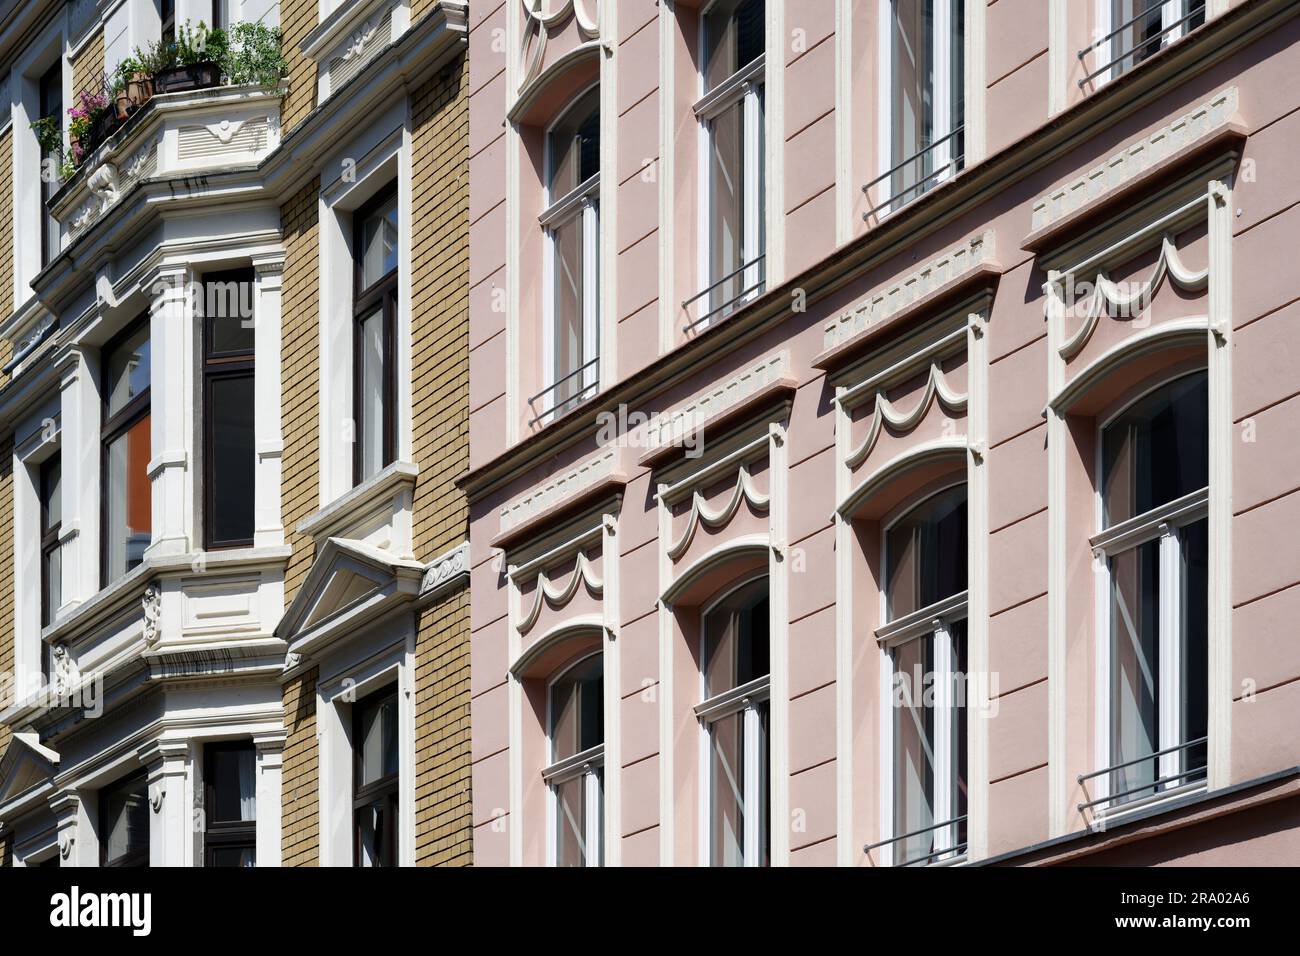 façades rénovées de maisons résidentielles aux couleurs pastel et richement décorées de la fin du 19th siècle dans le quartier d'eigelstein de cologne Banque D'Images